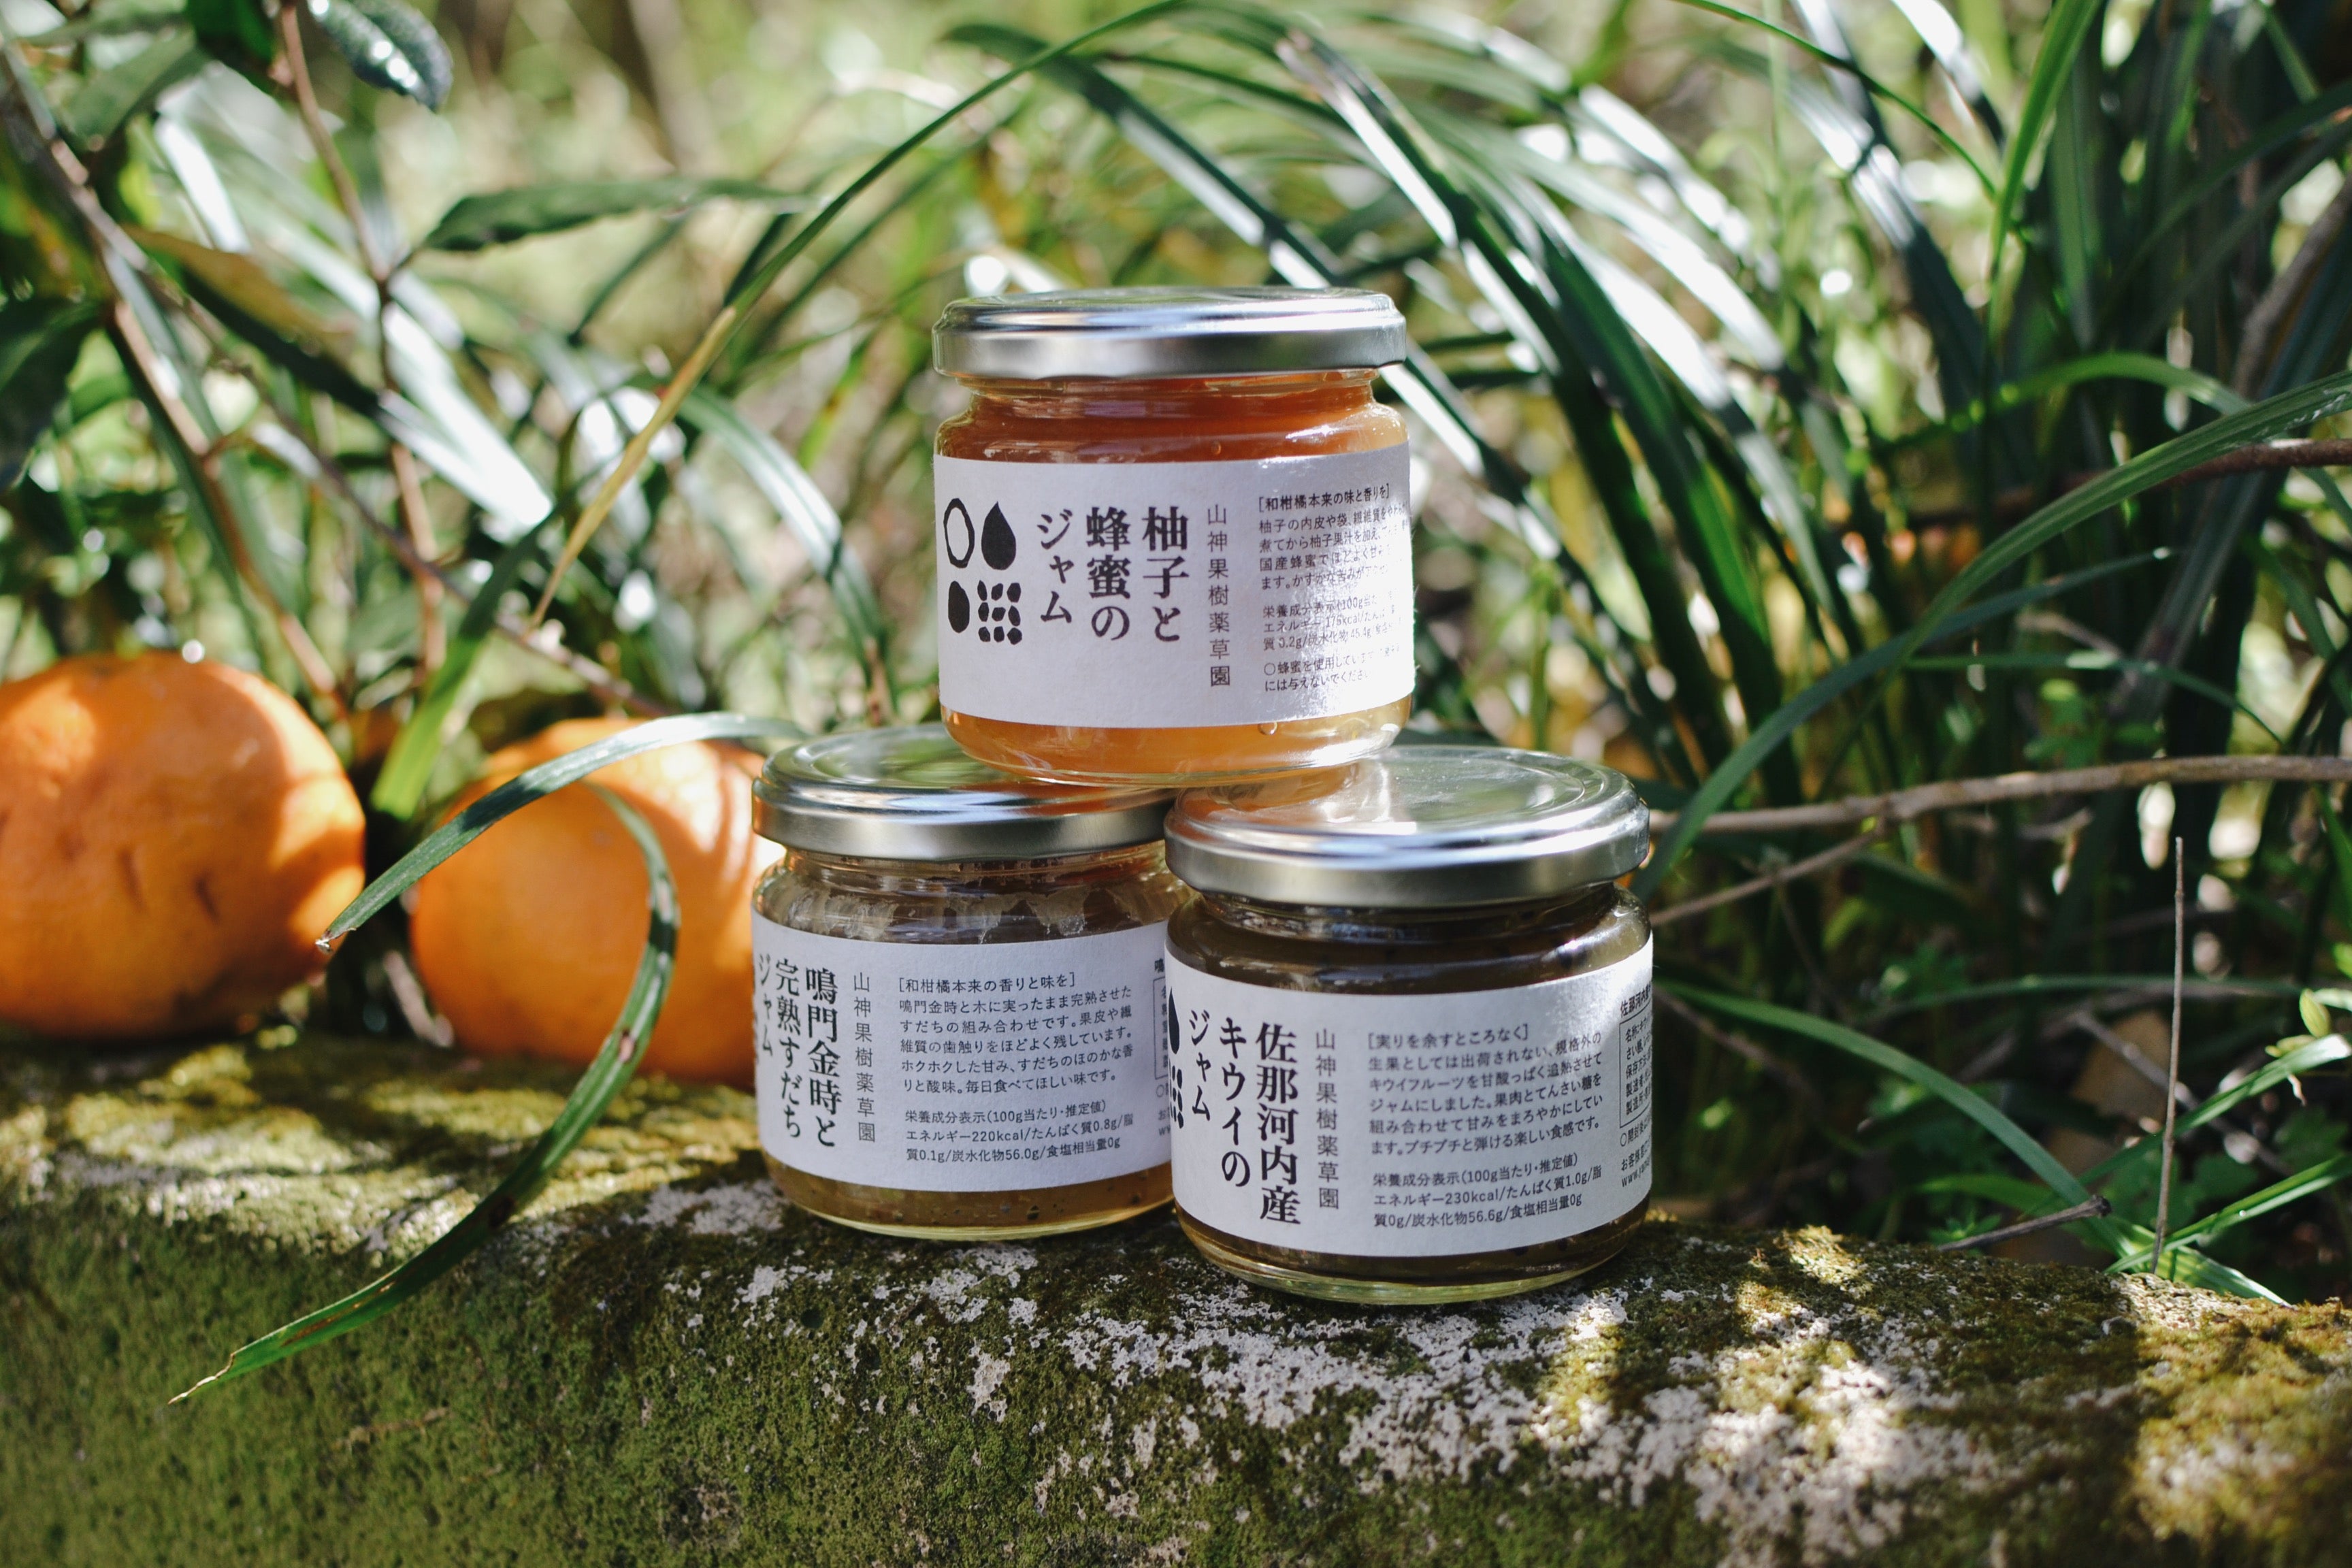 柚子と蜂蜜のジャム MARKS&amp;WEB 松山油脂の山神果樹薬草園